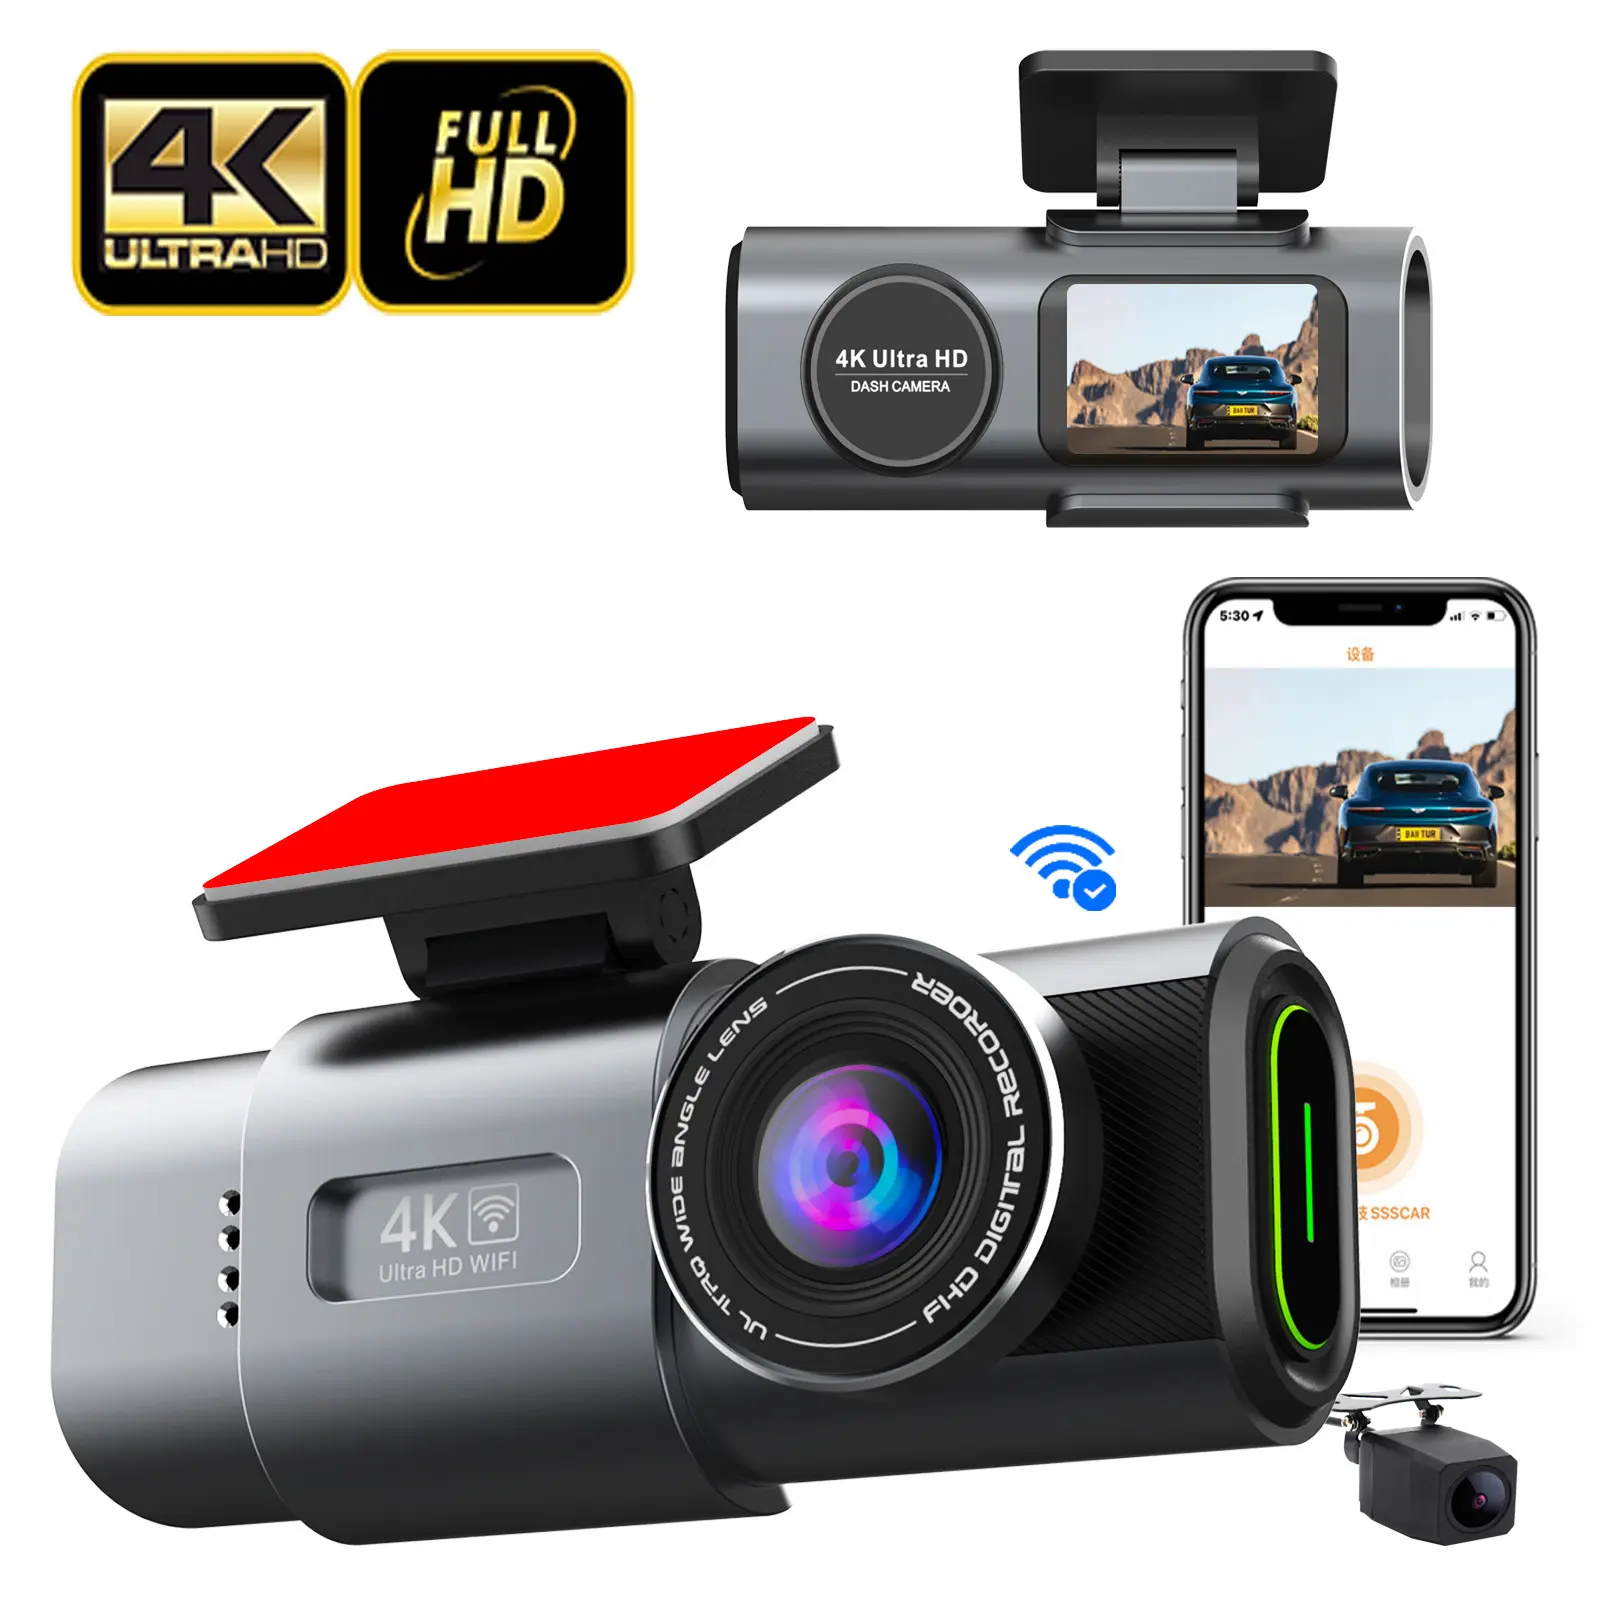 كاميرا داش ذات مسجل فيديو رقمي للسيارة الصغيرة كاميرا مزدوجة 4k واي فاي نظام تحديد المواقع عدسة أمامية وخلفية مزدوجة كاميرا داش 4k كاميرا صندوق أسود للسيارة كاميرا داش 4k